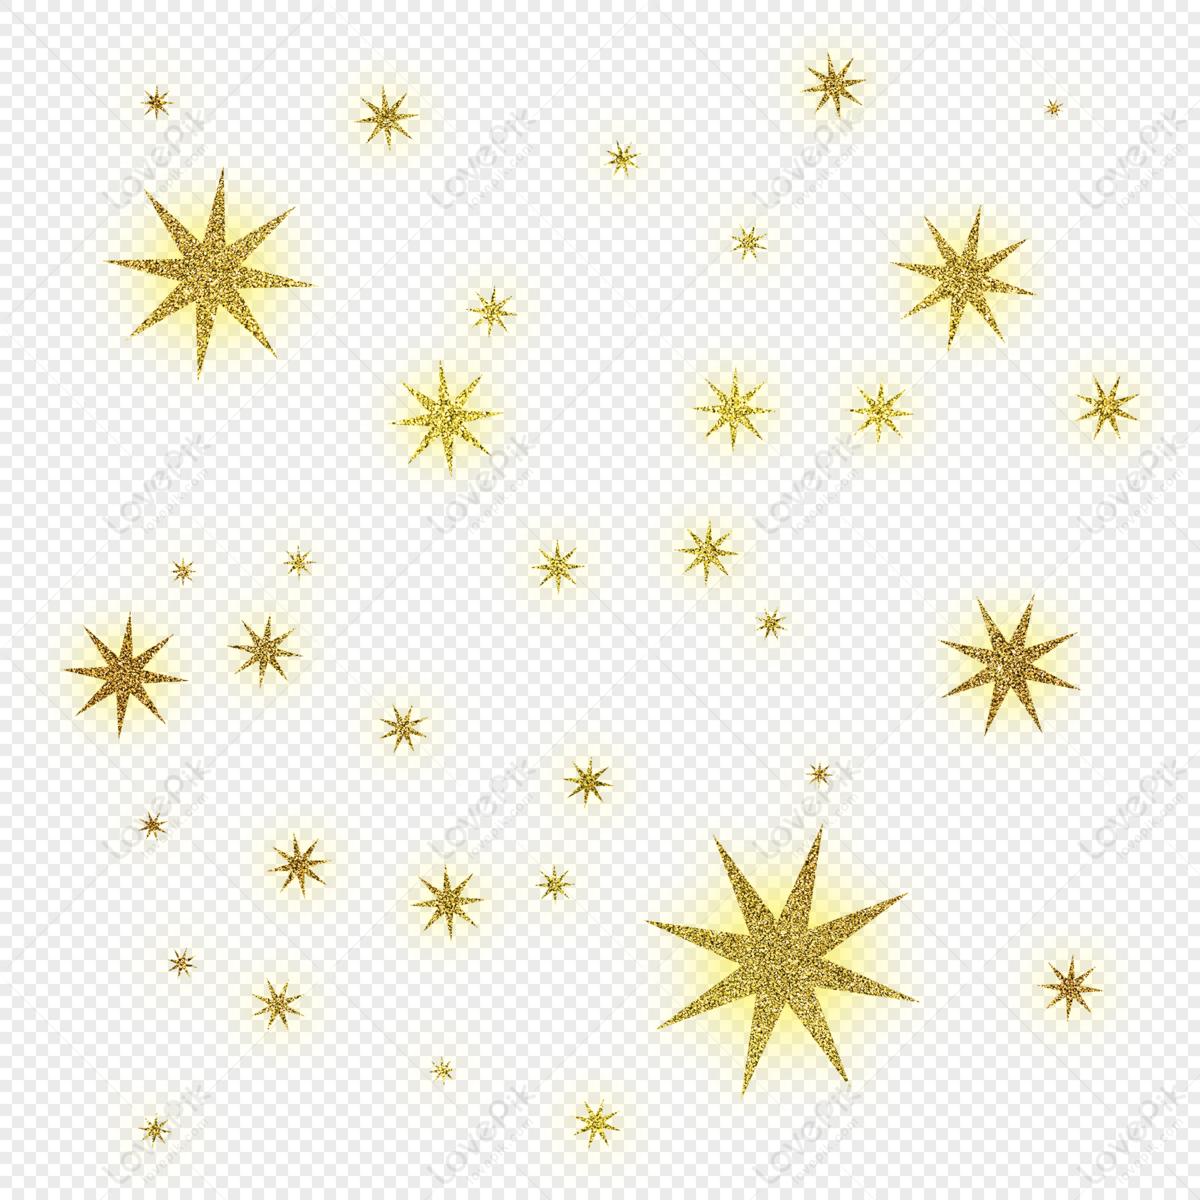 golden sparkles png